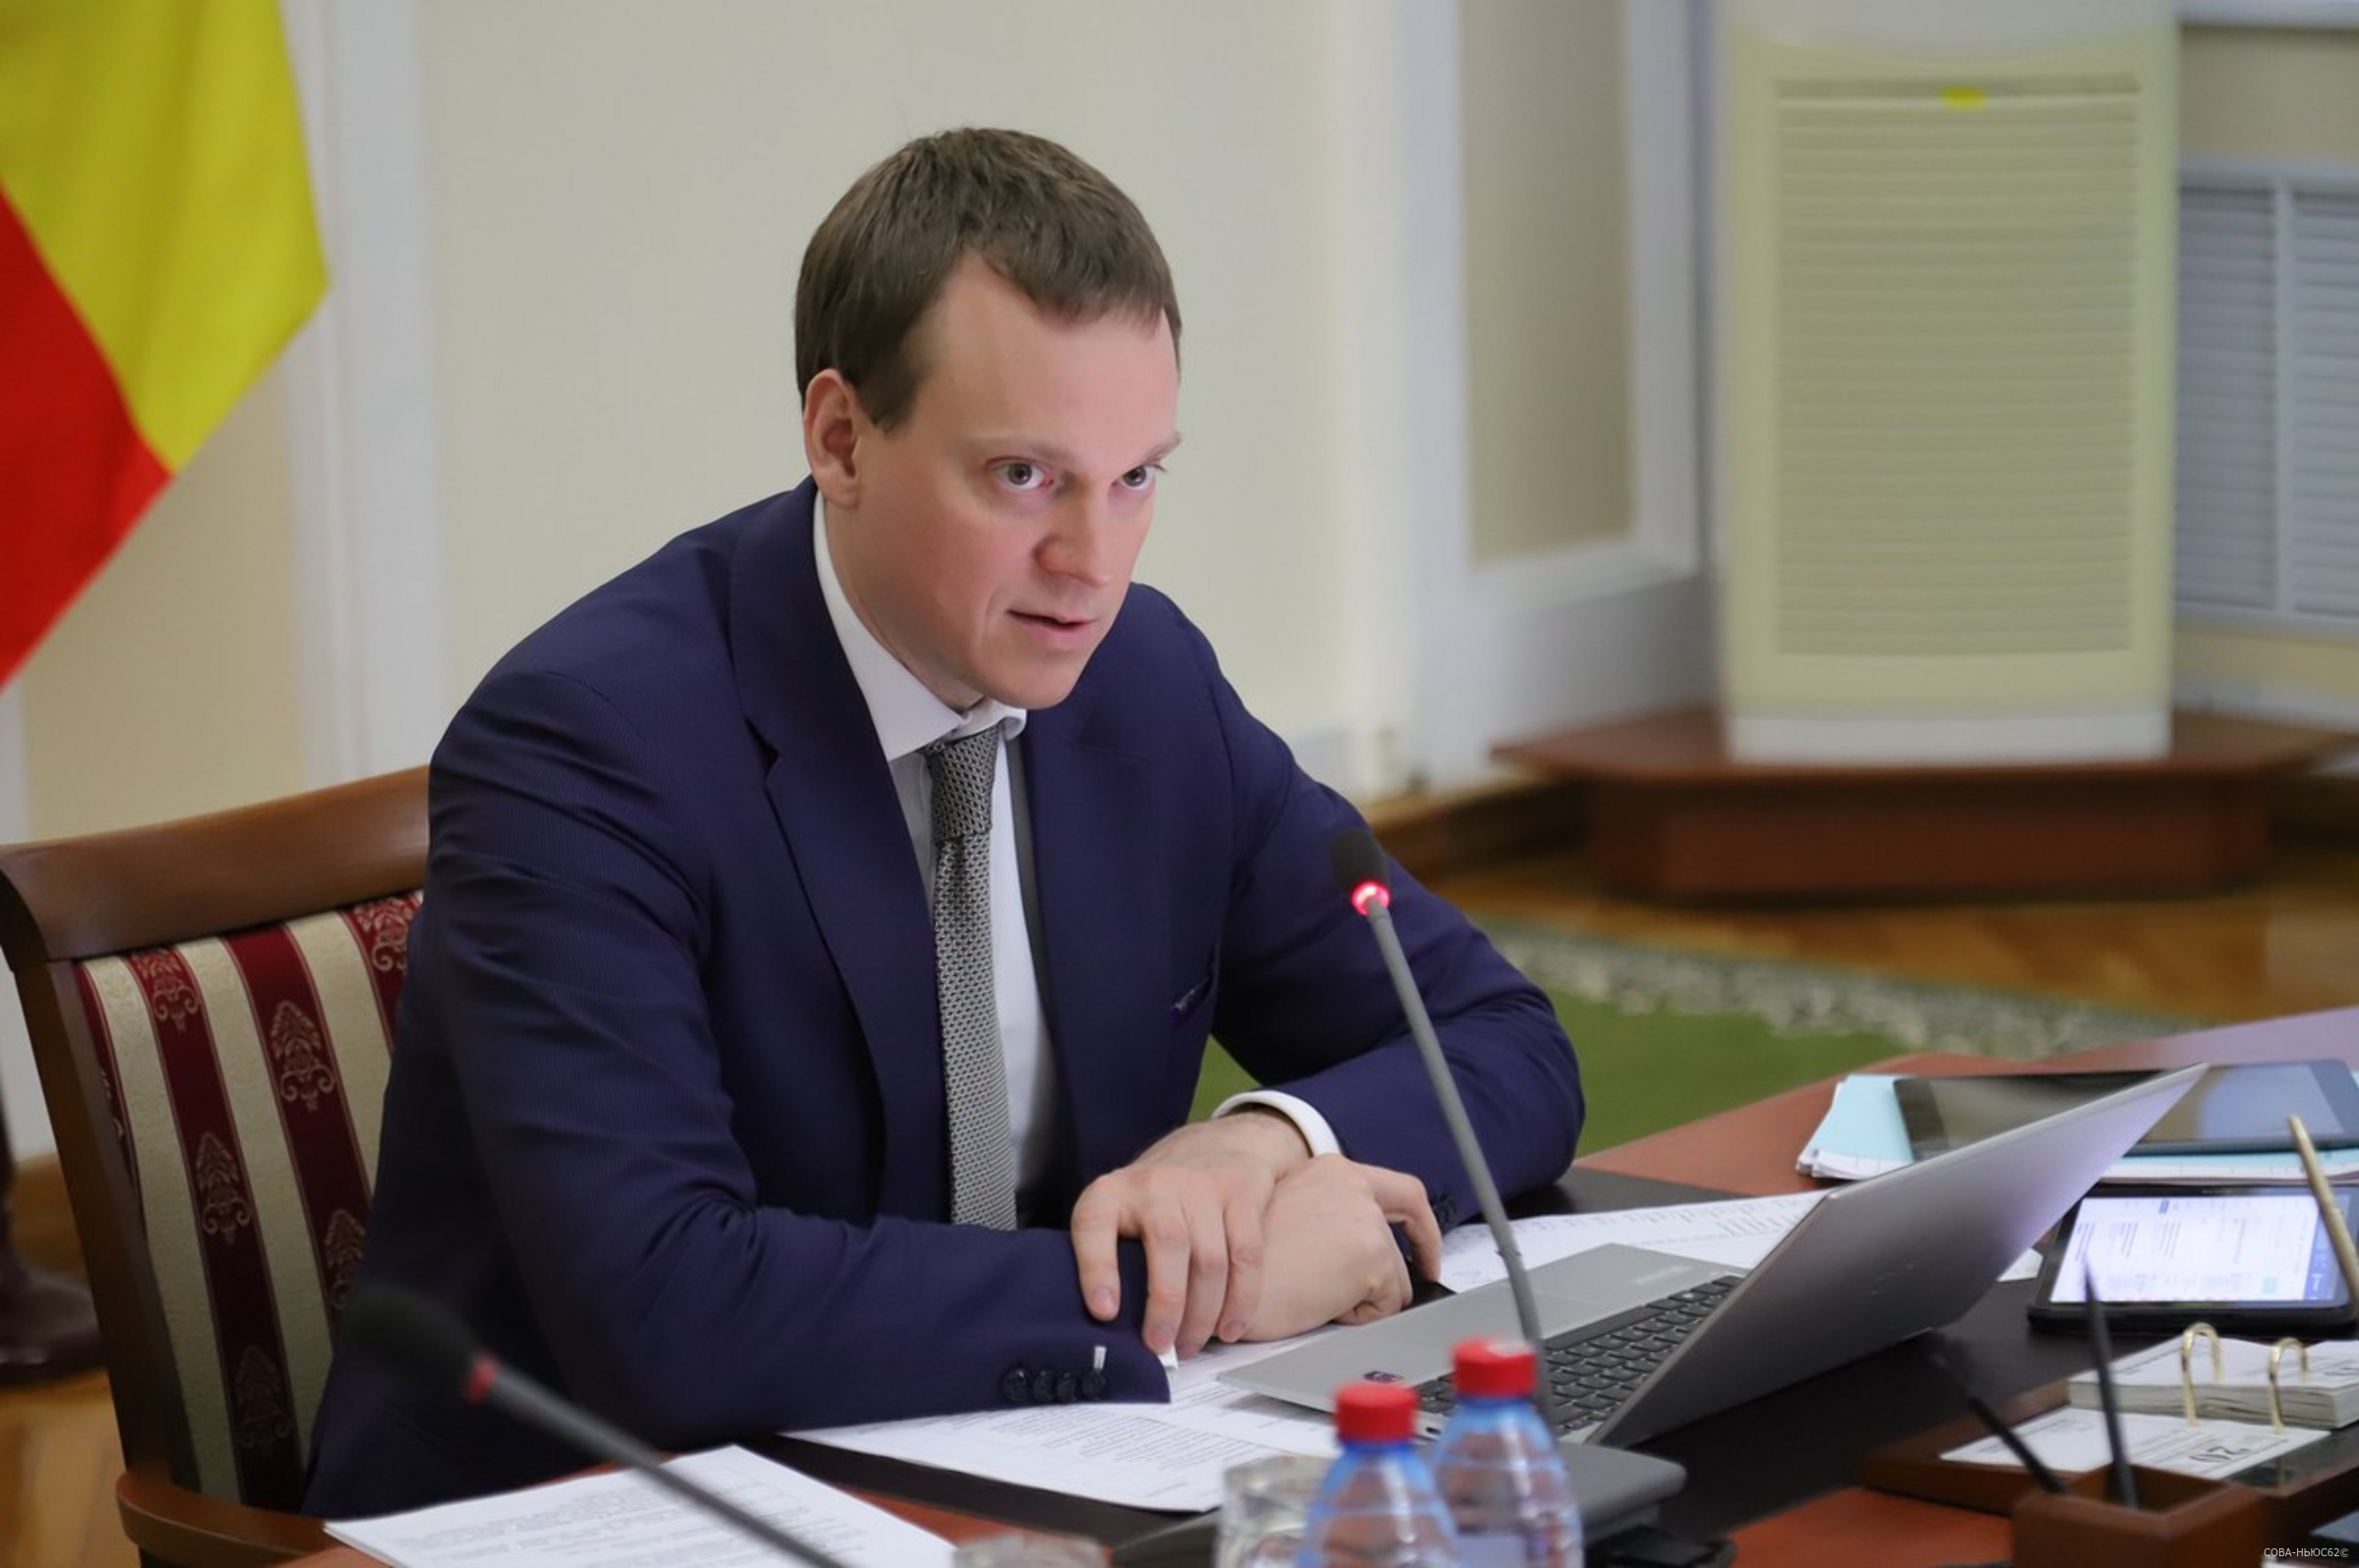 Выездное бесплатное юридическое бюро в Рязанской области начнет работу 6 февраля